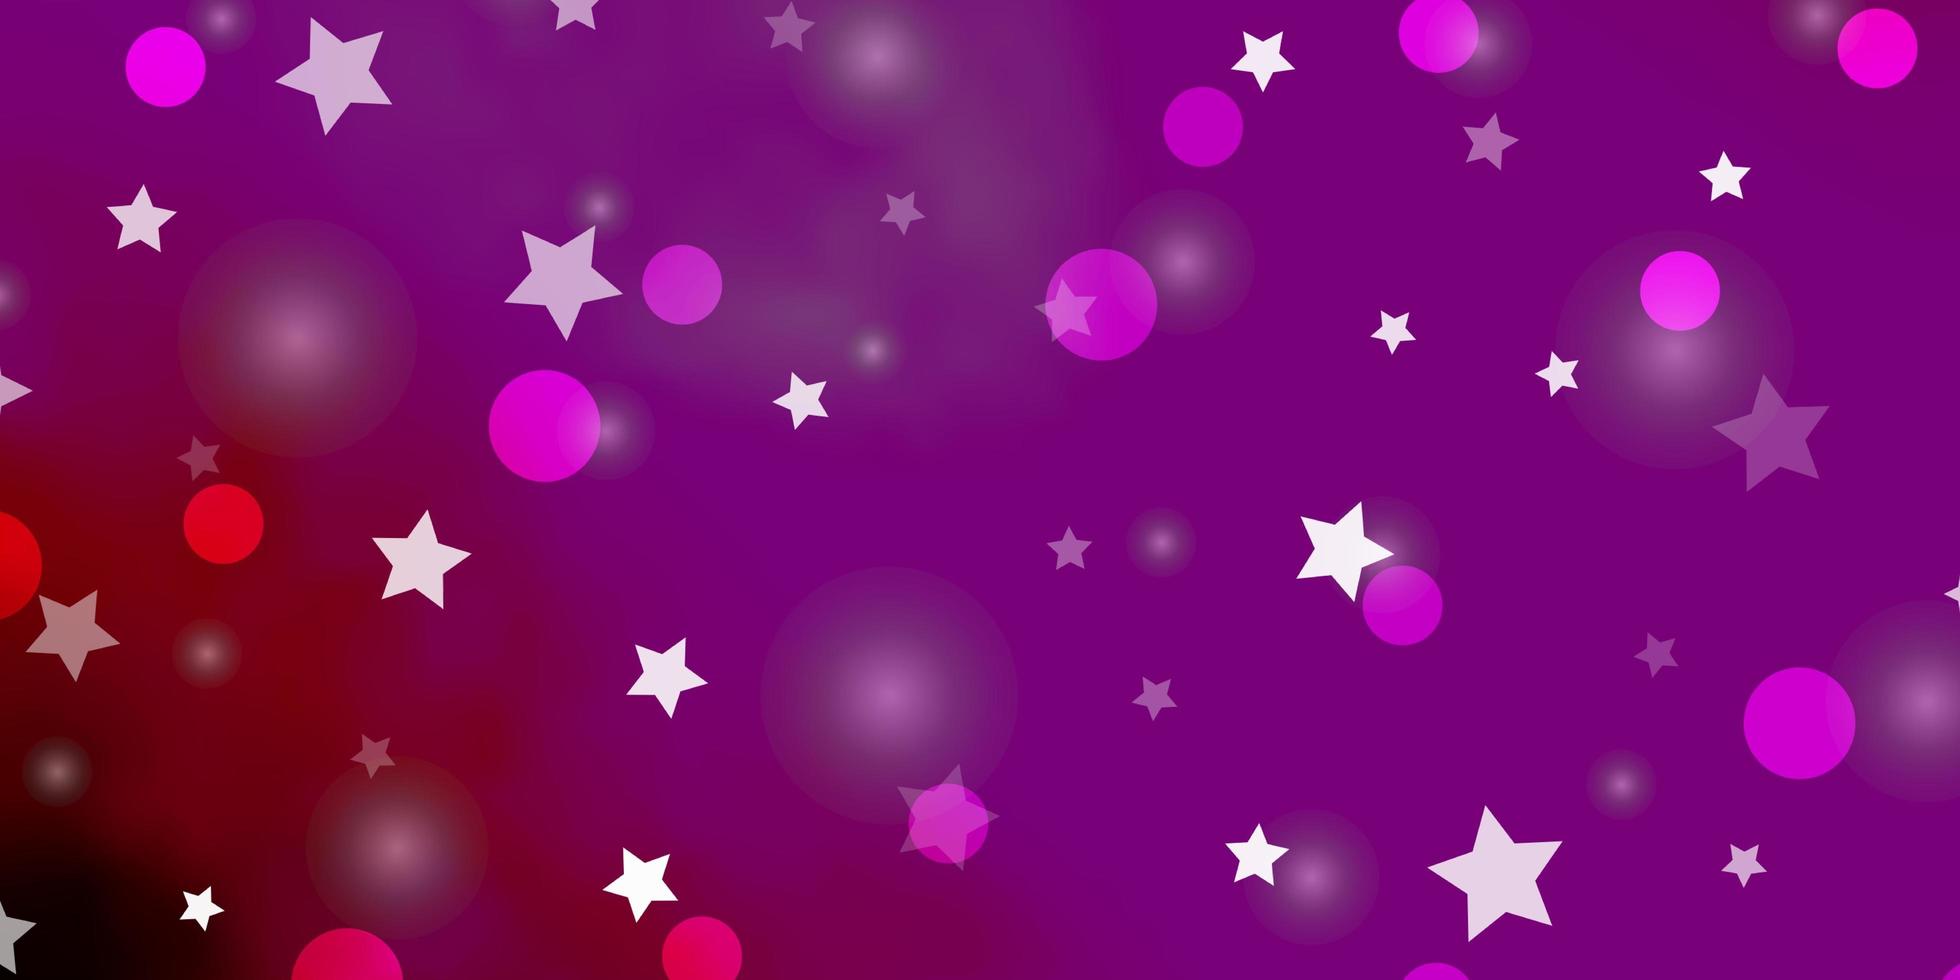 sfondo vettoriale viola scuro, rosa con cerchi, stelle.